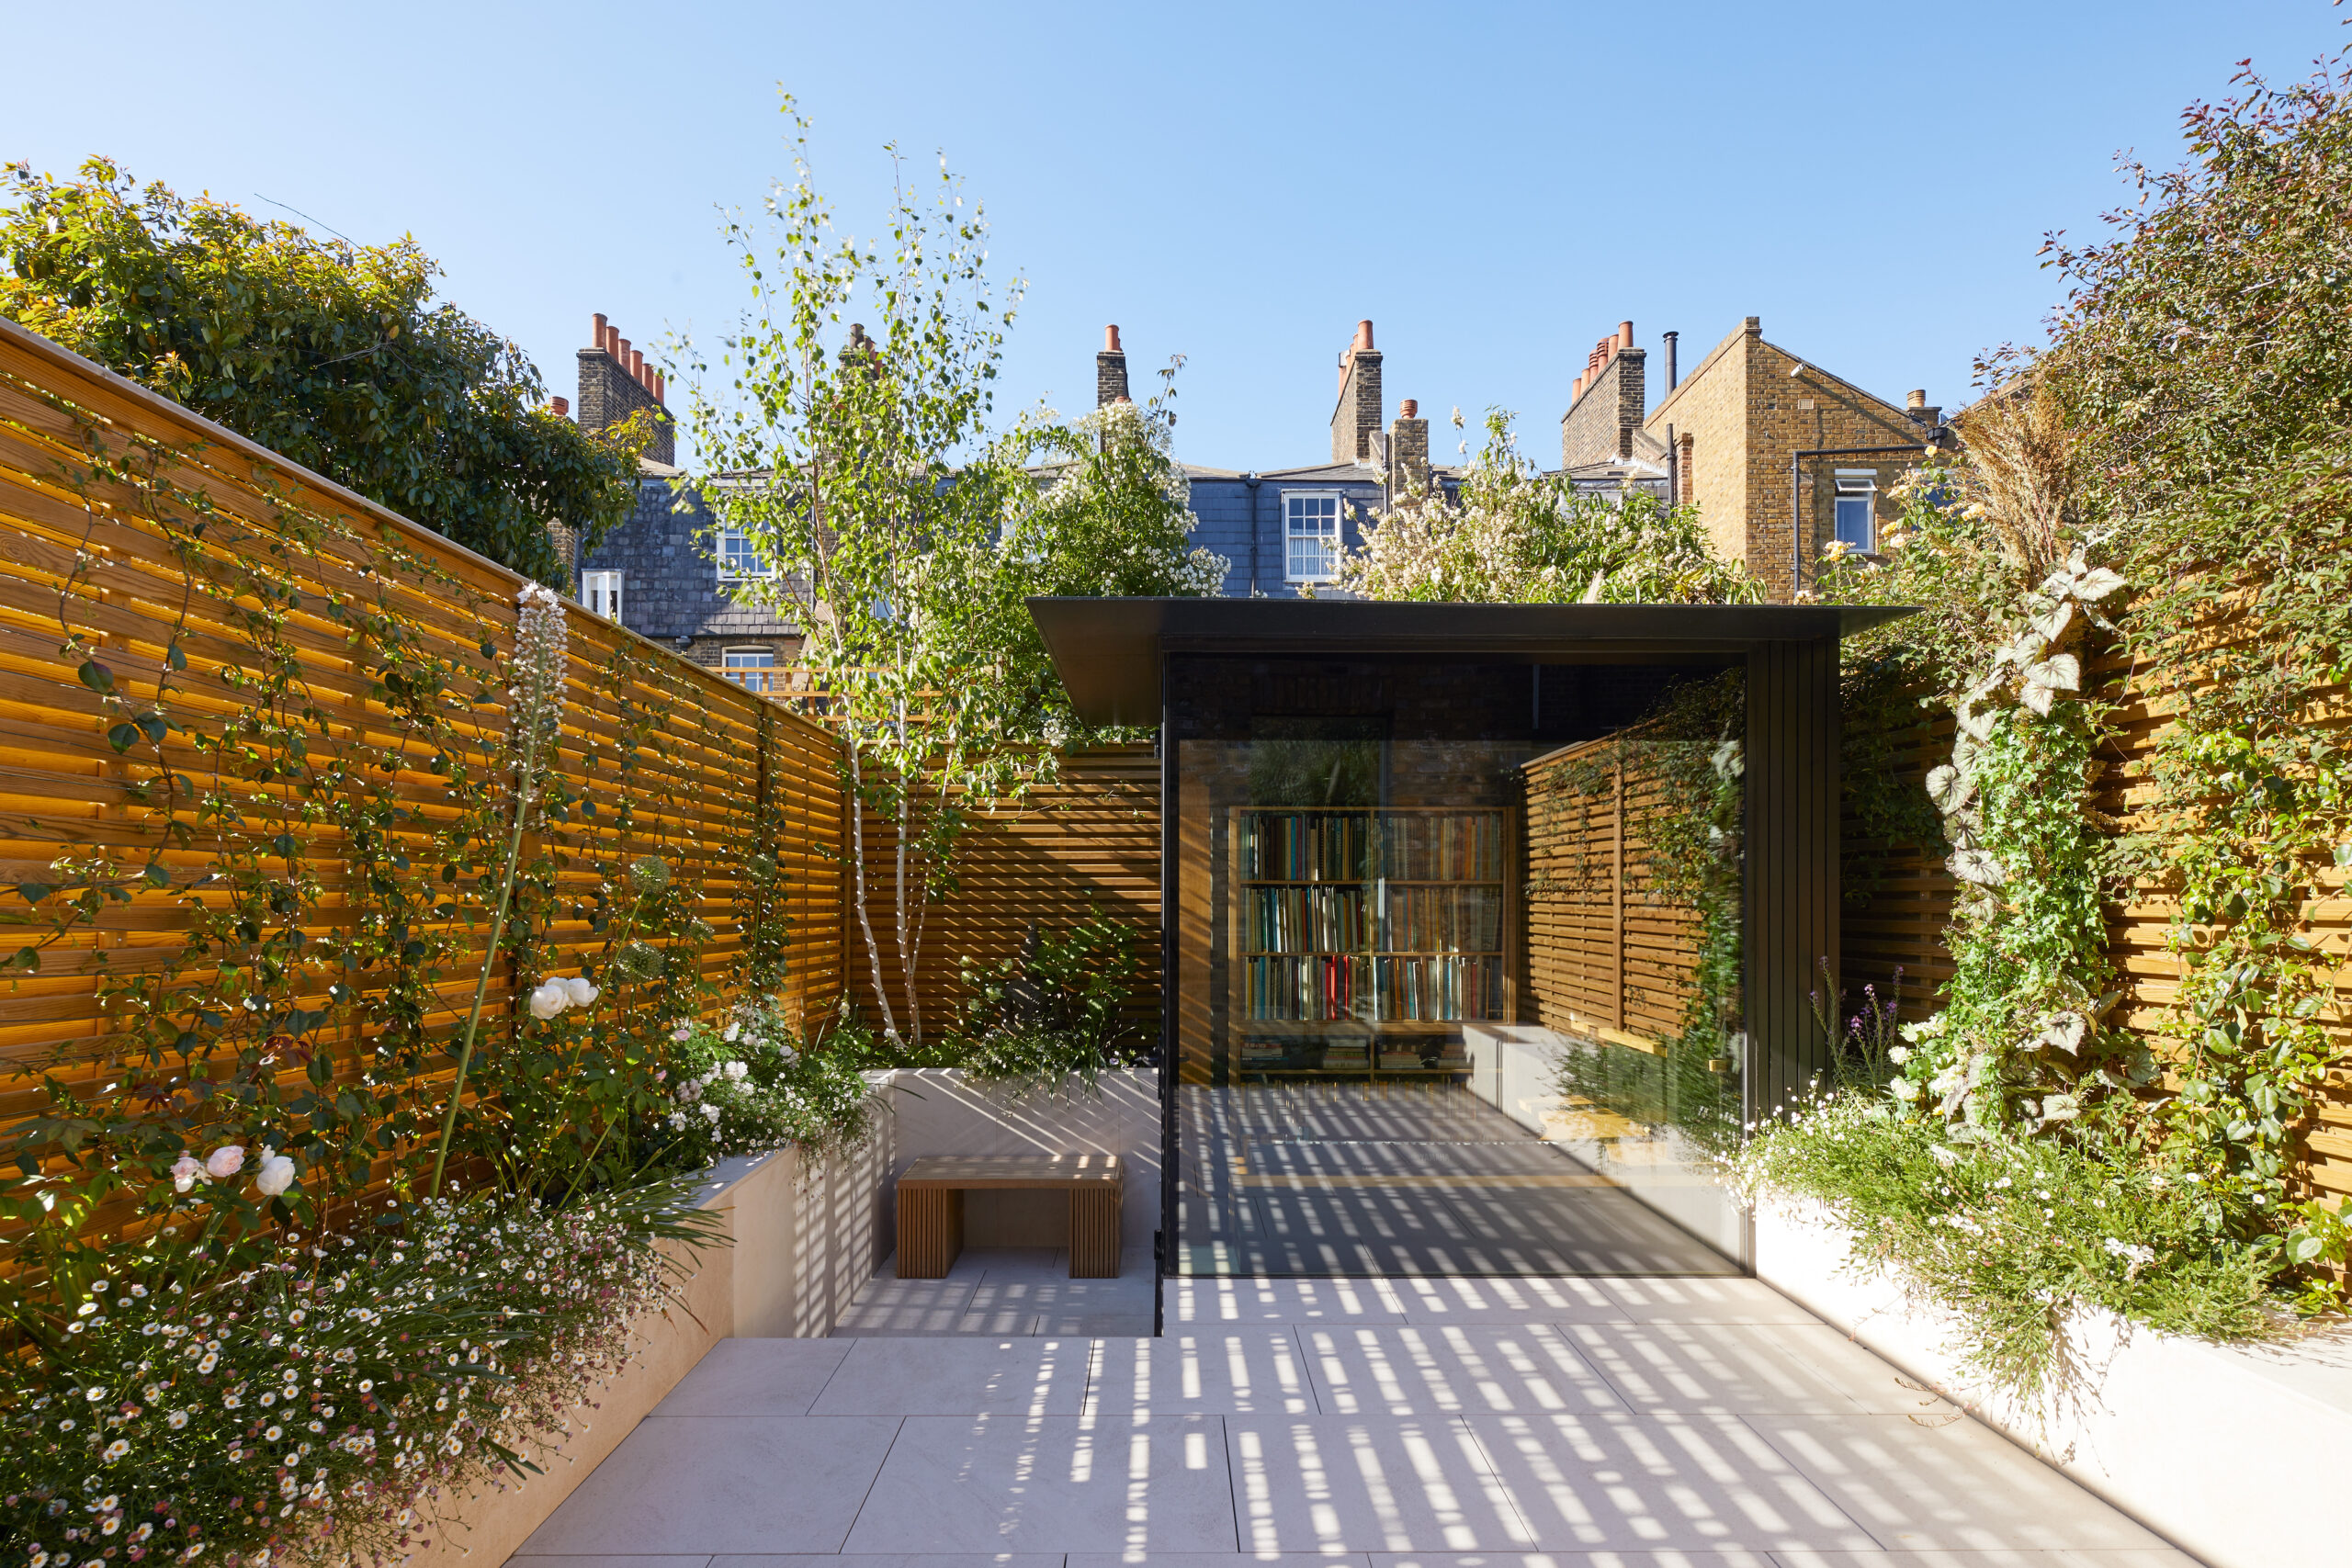 Garden by Paul Archer Design - luxury architecture studio in London